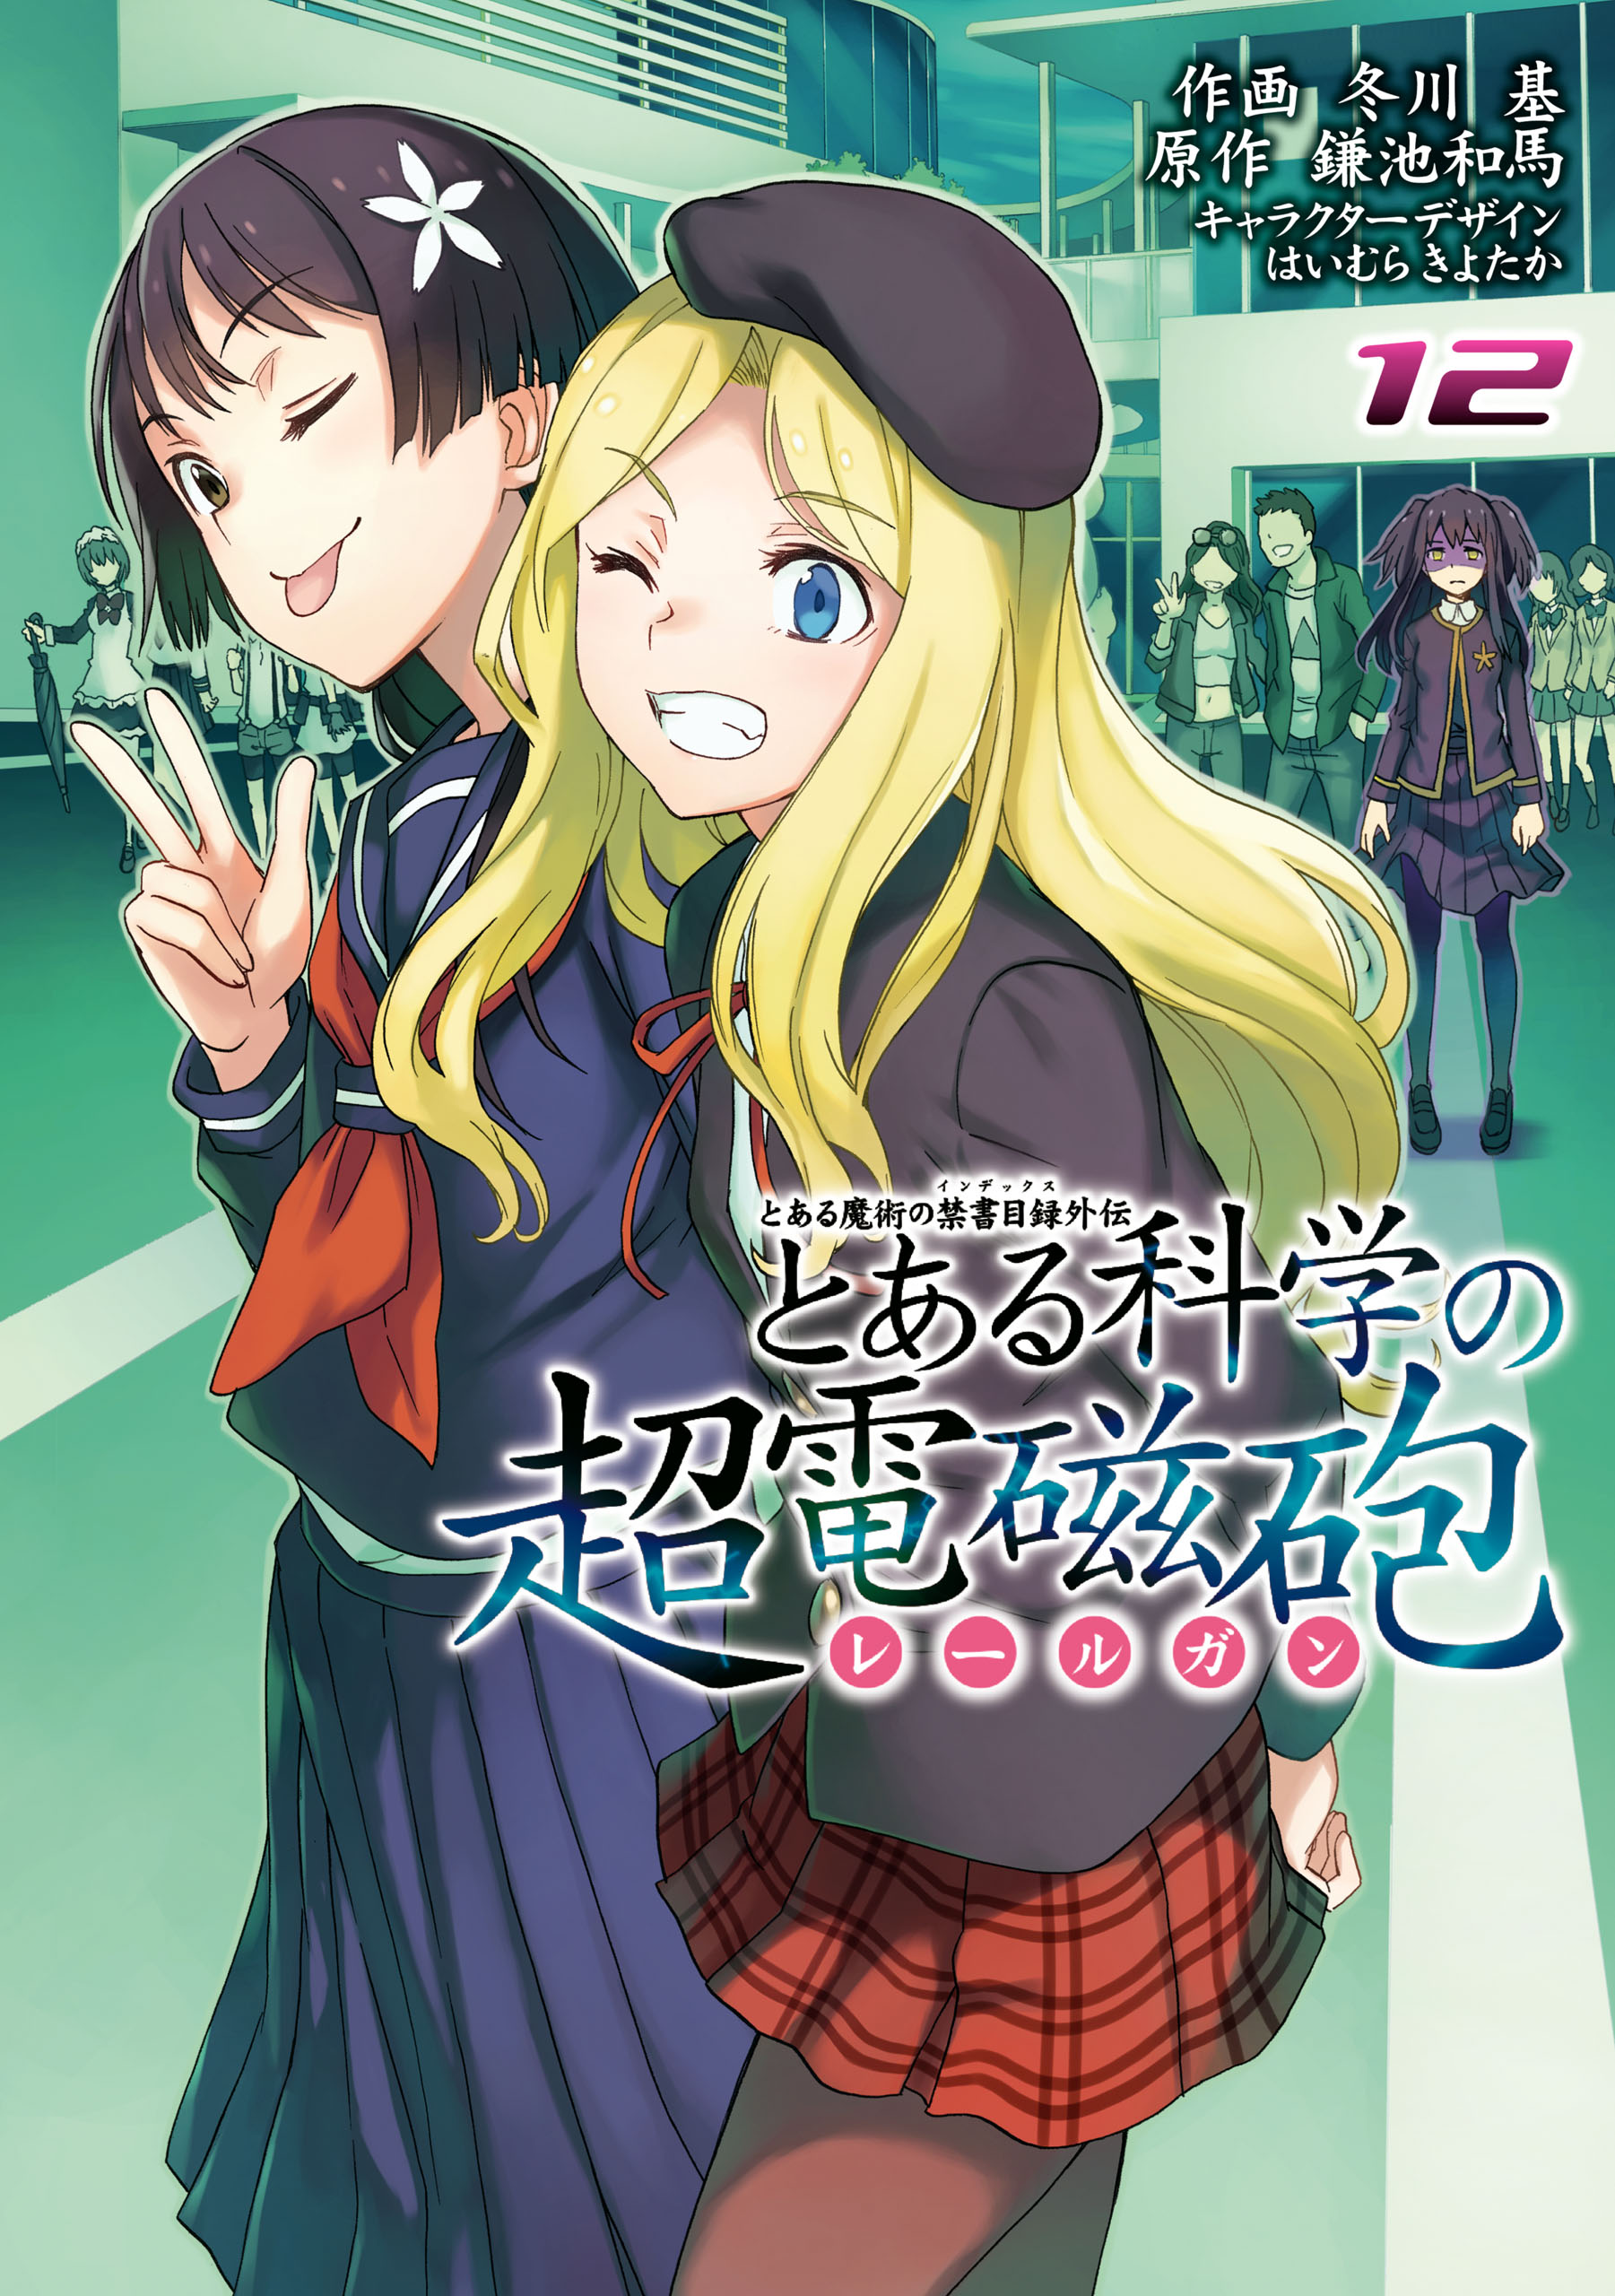 Toaru Kagaku no Railgun Manga Volume 12 | Toaru Majutsu no Index 